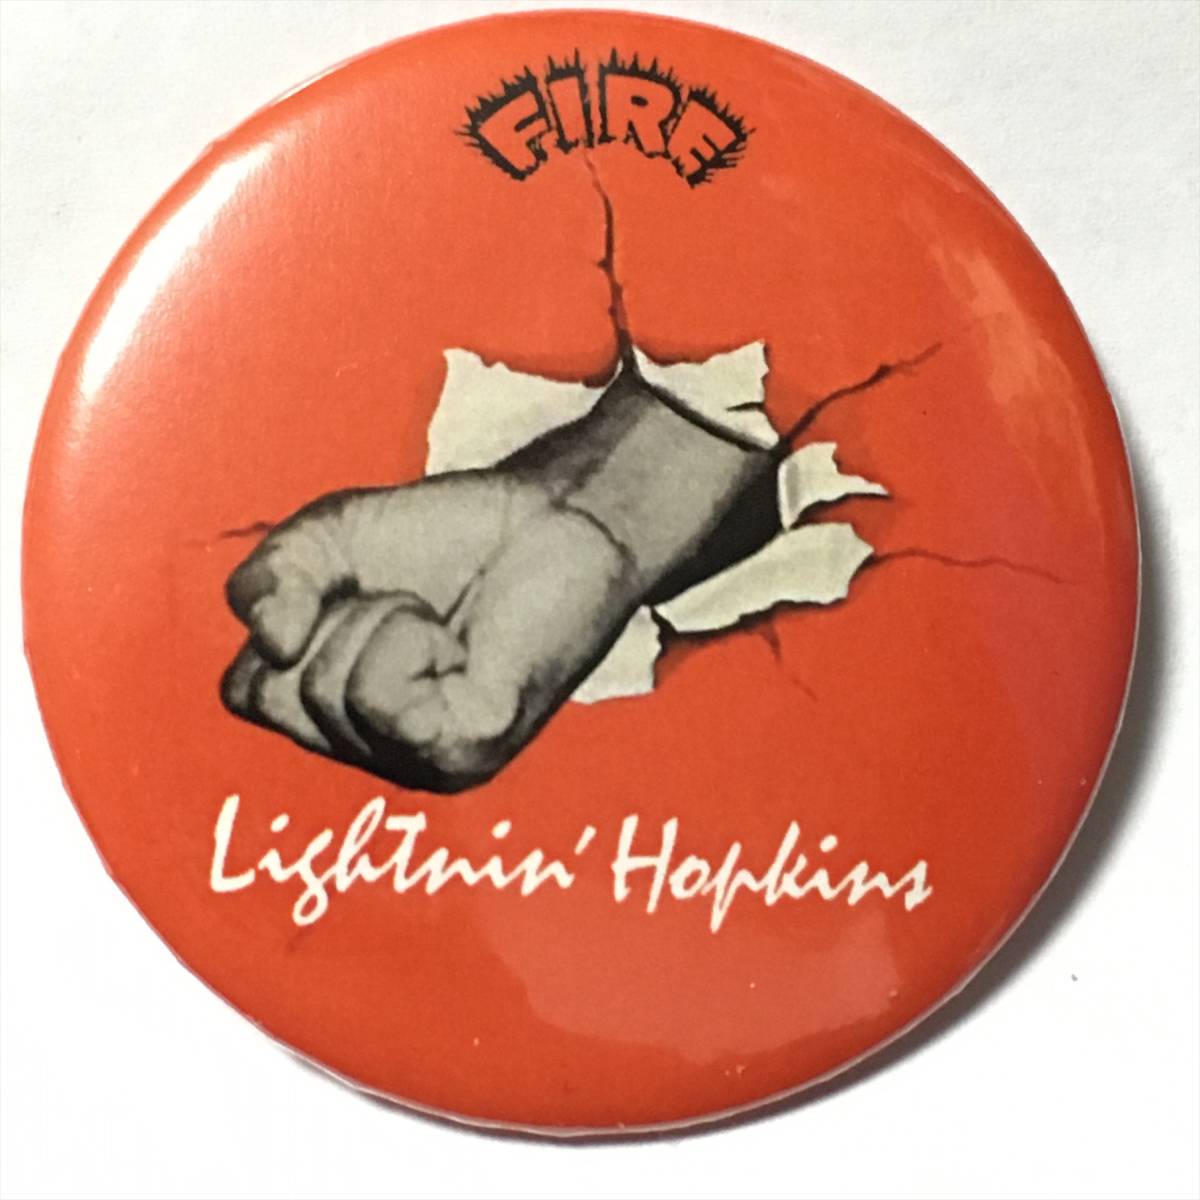 【福袋セール】 低価格化 デカ缶バッジ 5.7cm Lightnin' Hopkins Mojo Hand ライトニンホプキンス モジョハンド sannart.com sannart.com